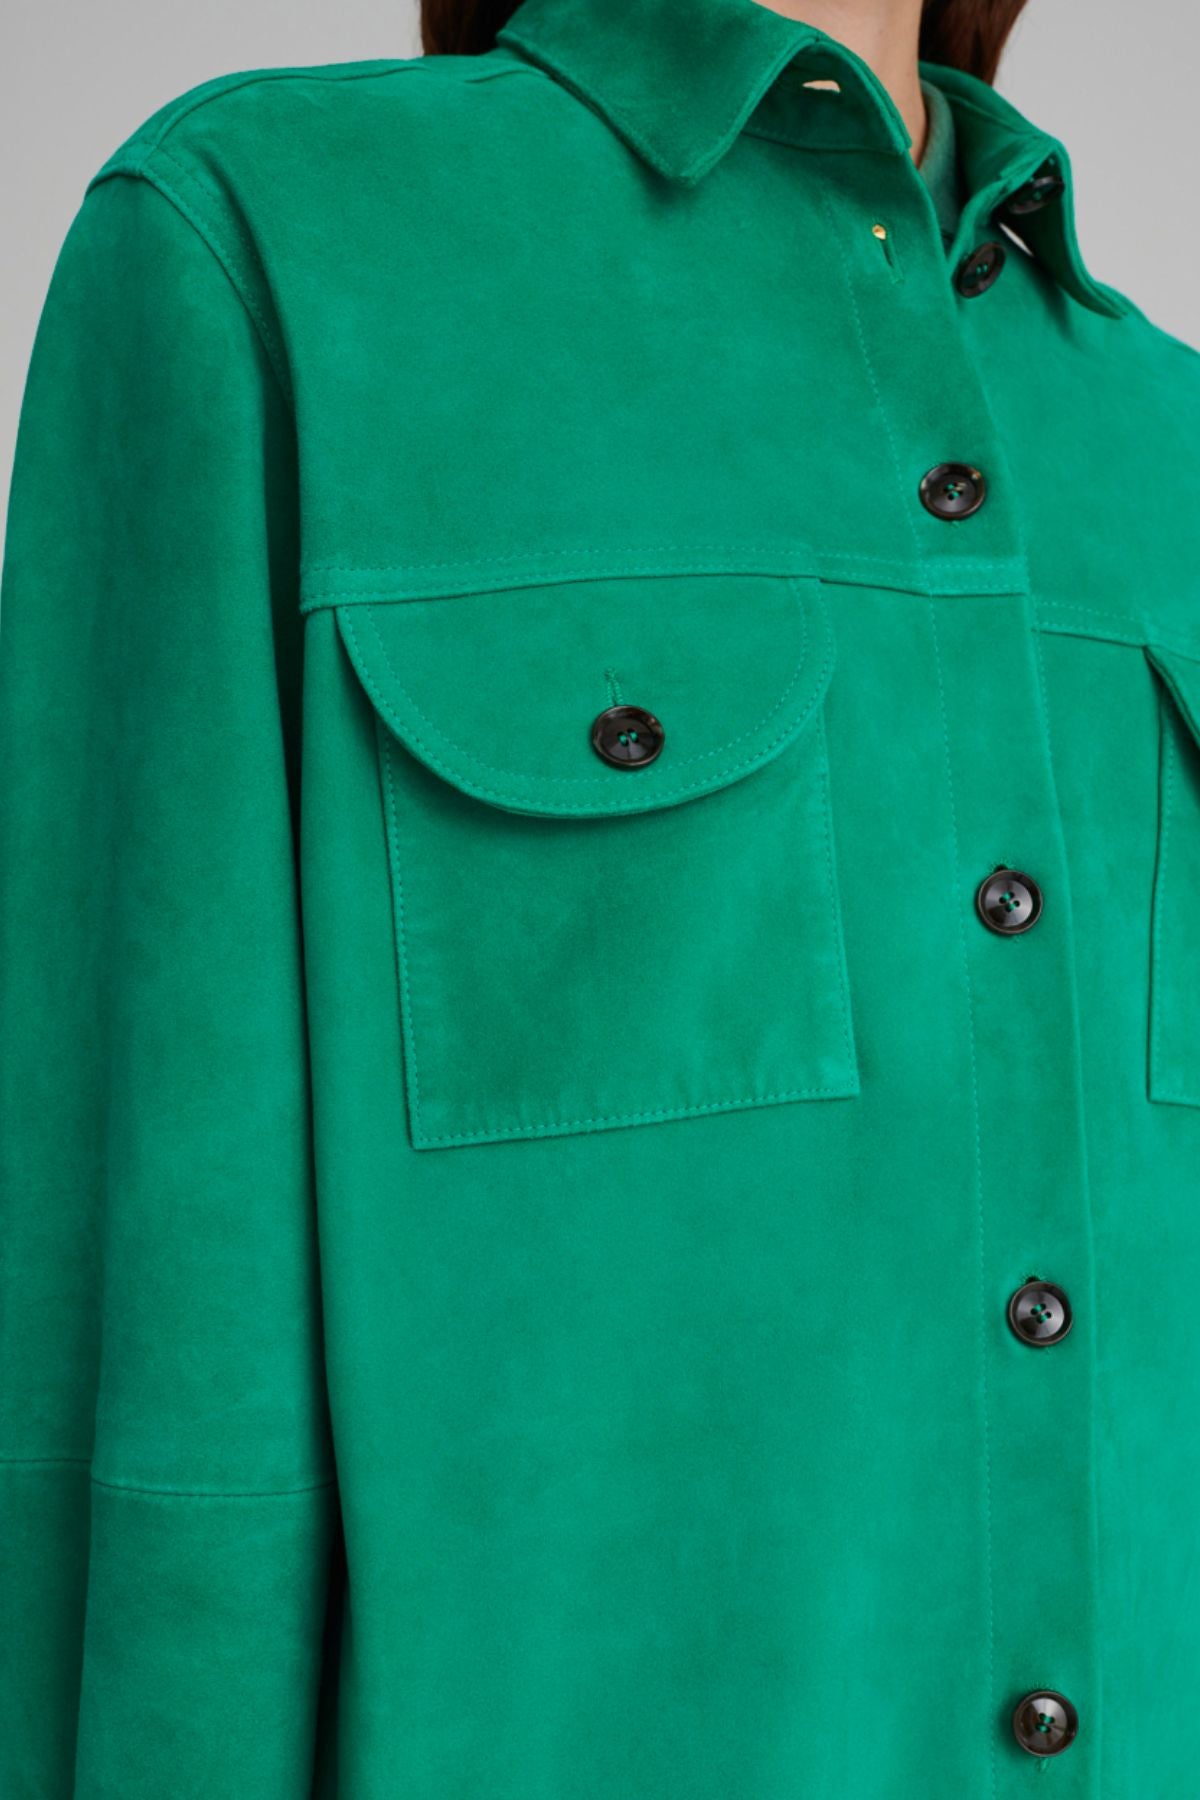 Blazé Milano Viva Berber Suede Shirt - Emerald